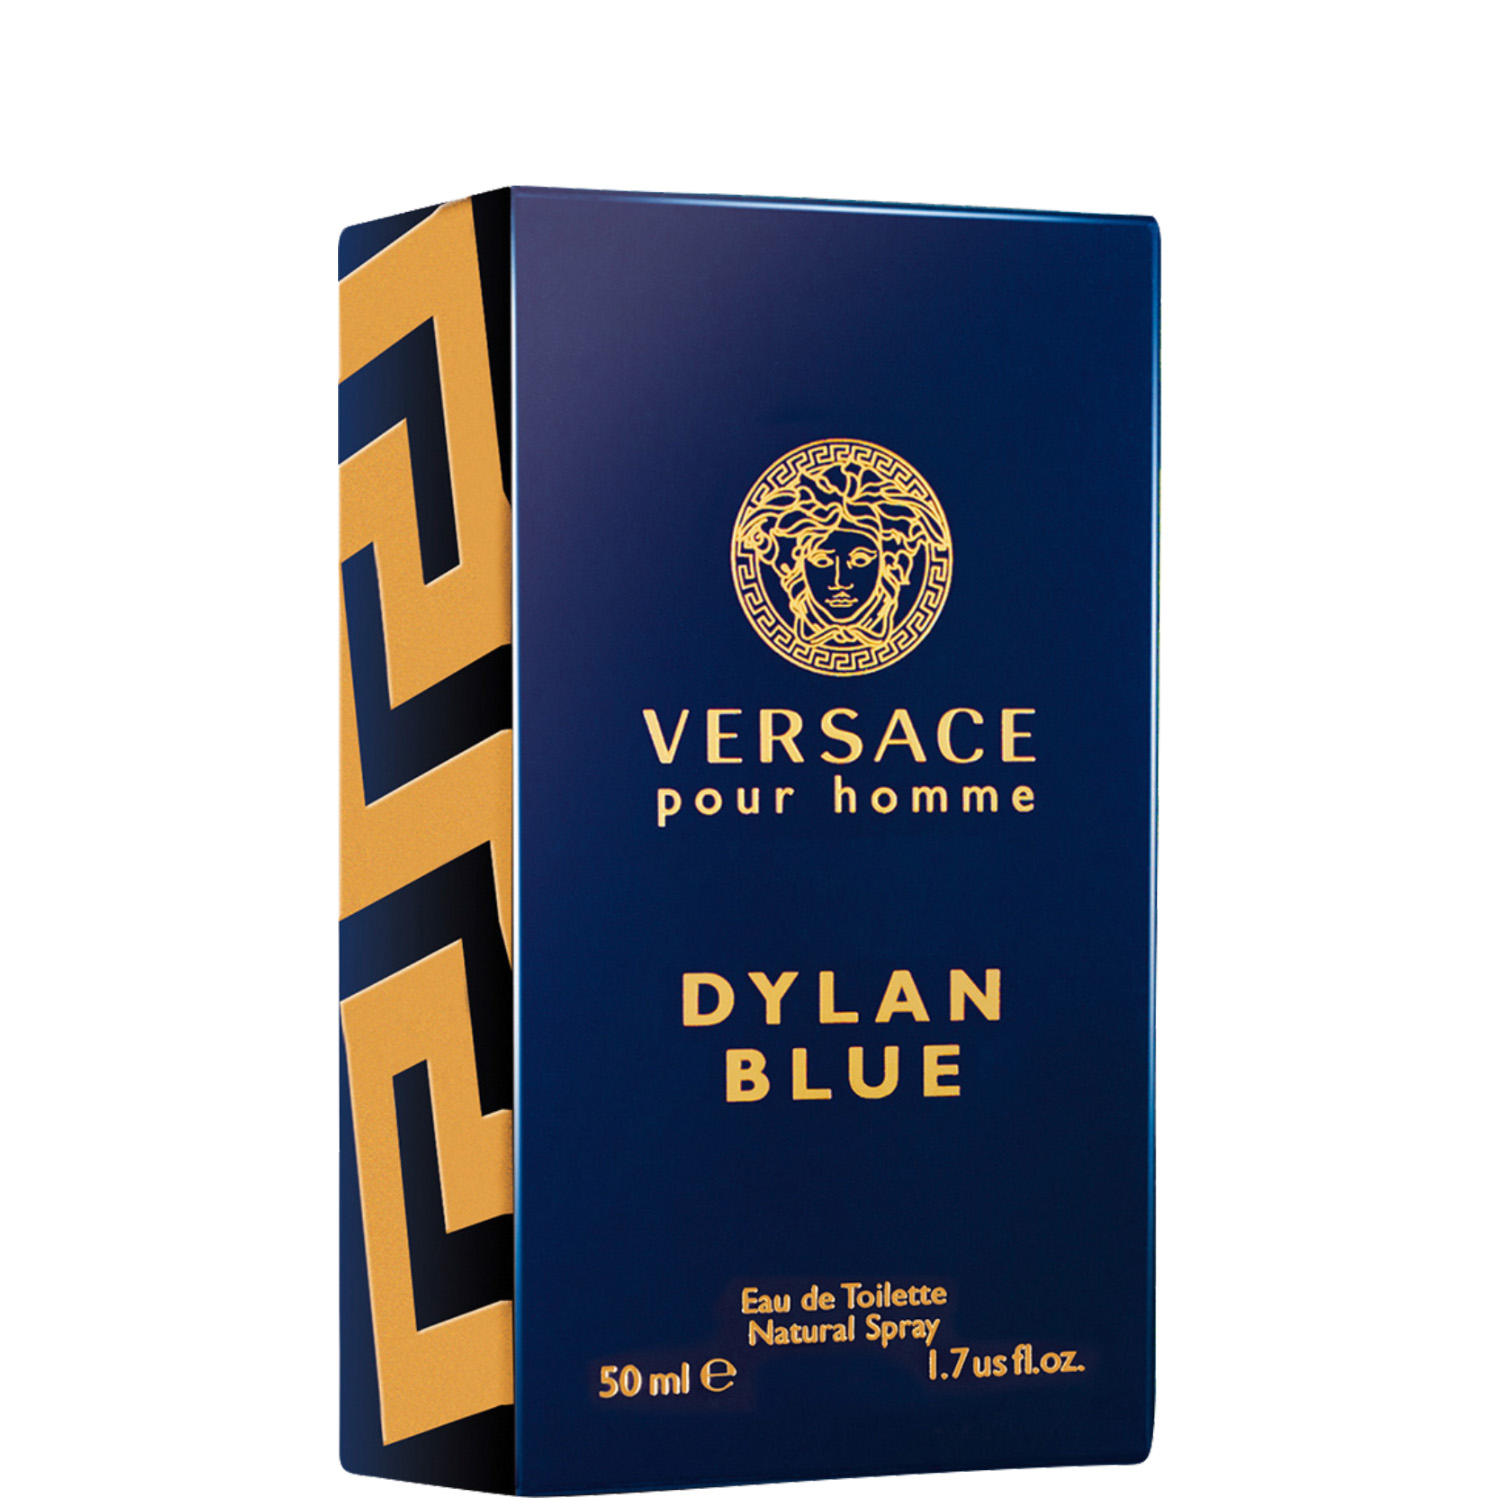 Versace Dylan Blue Eau de Toilette 50ml